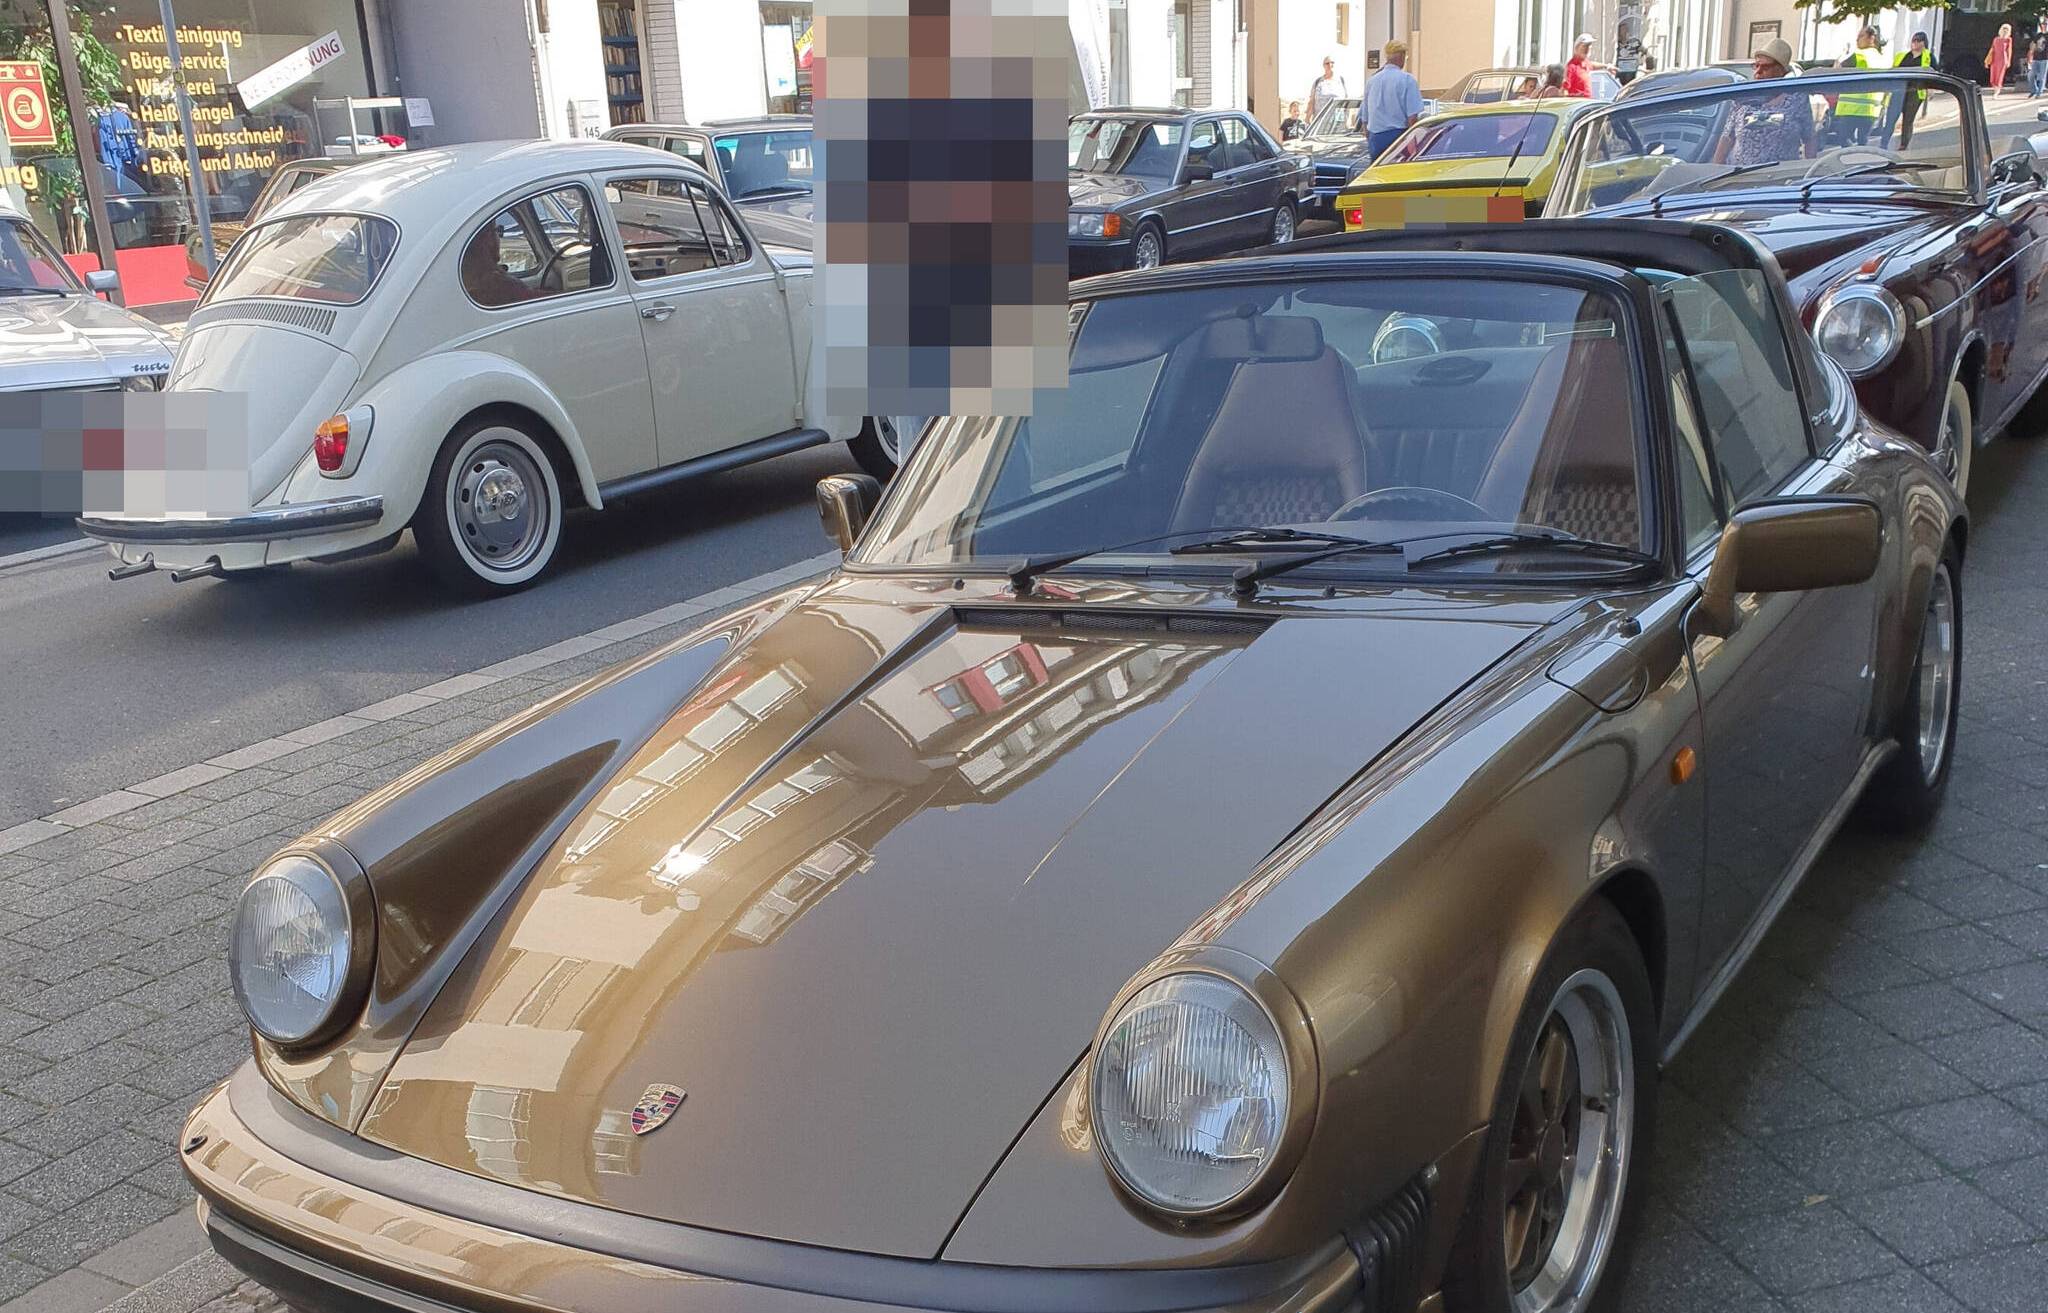 Dieser Porsche wurde entwendet.